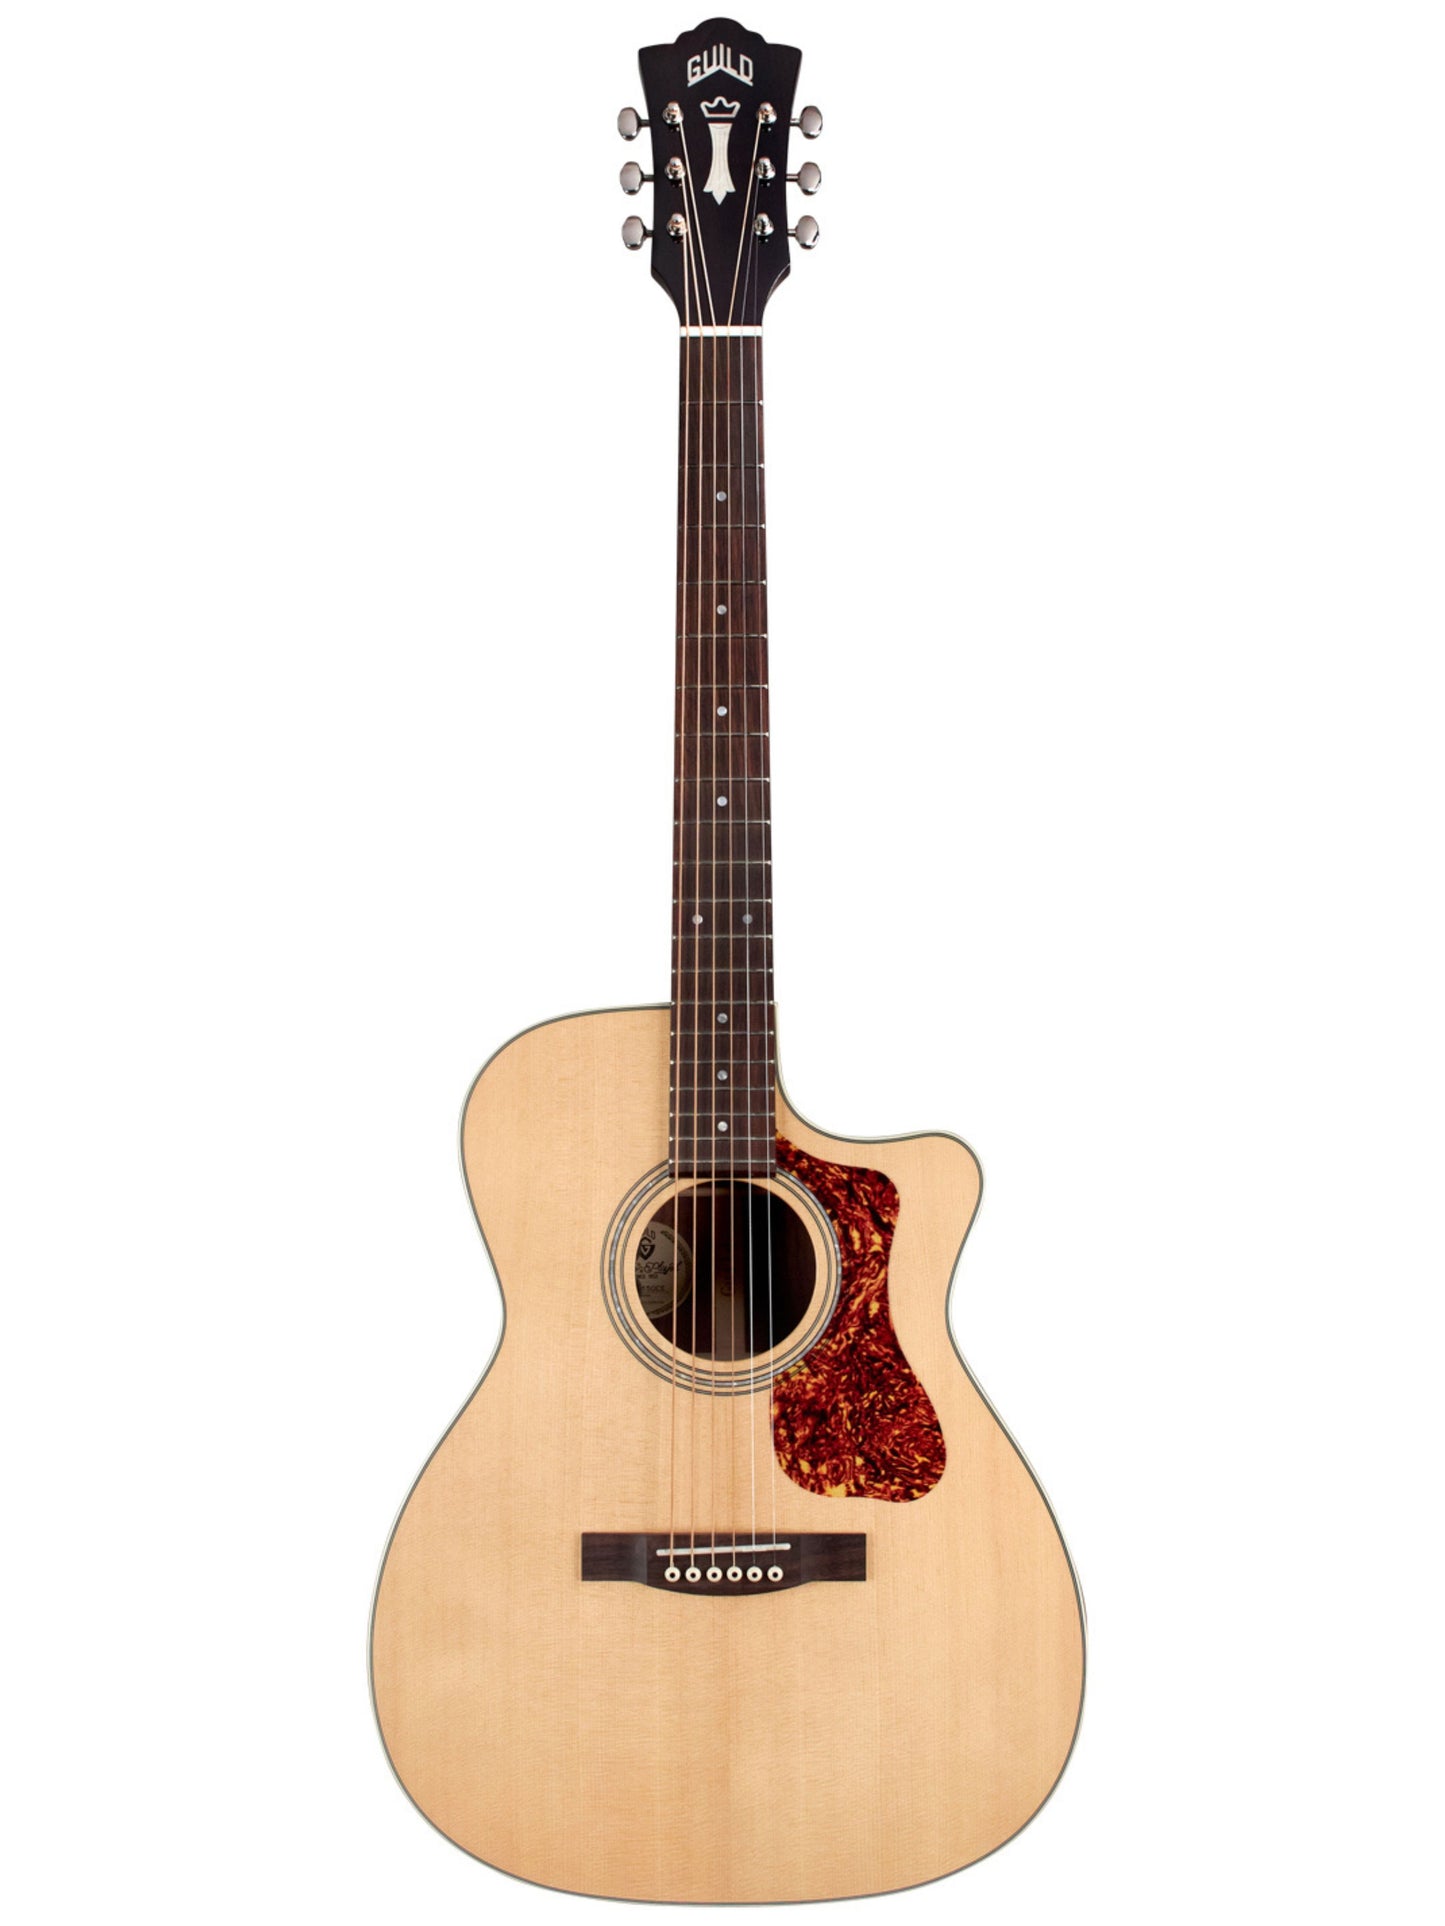 Guild OM-150CE Natural Acoustic Guitar